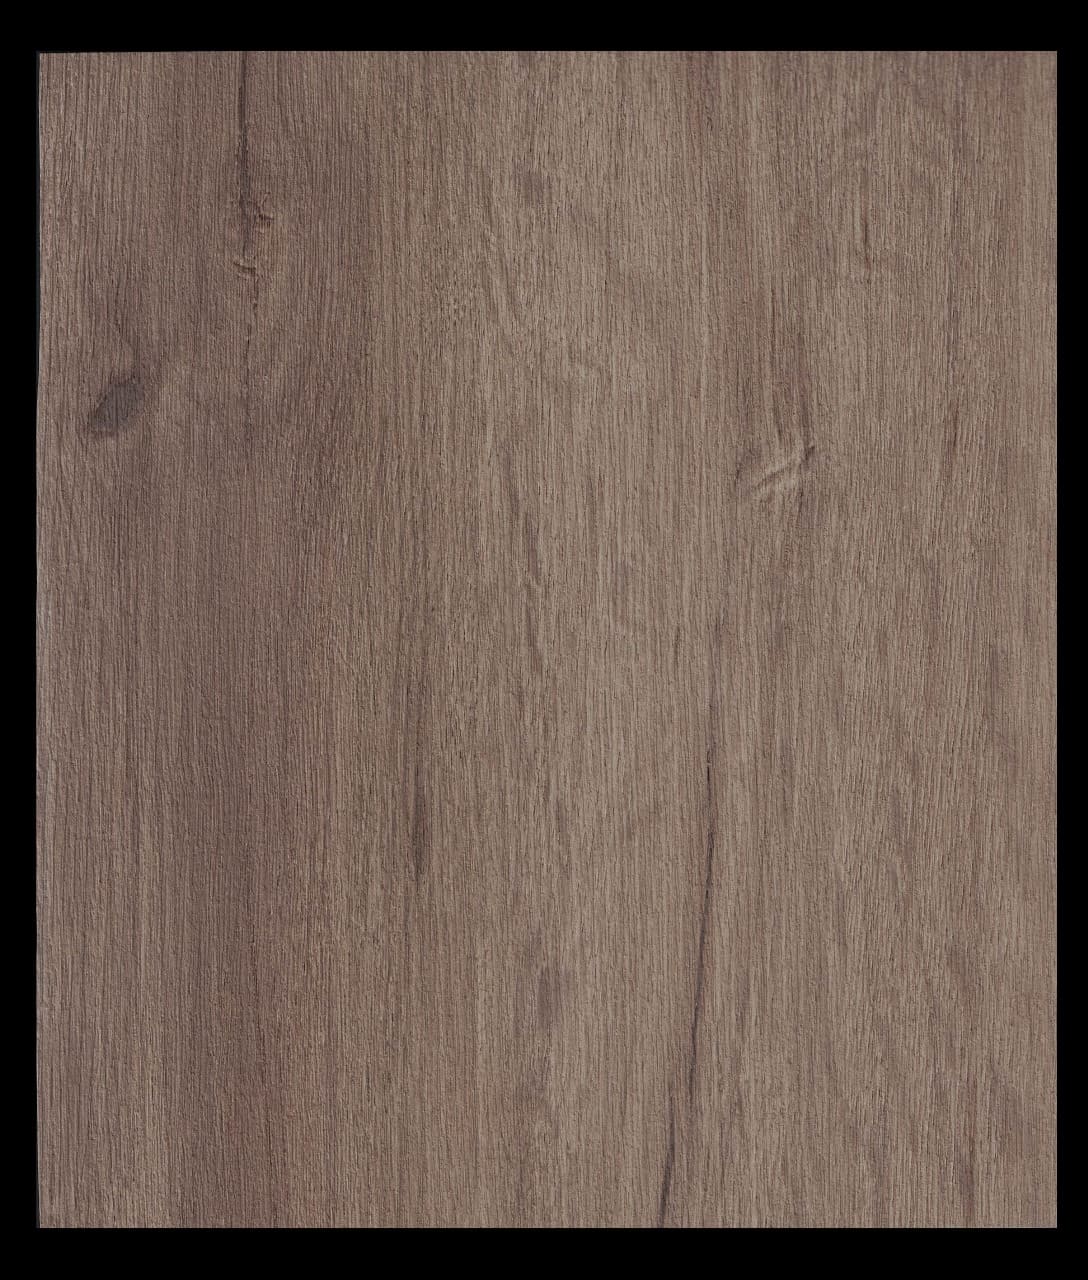 Бамбуковая панель HP007, 1200*2800*8мм, рельев дерева, коричневый